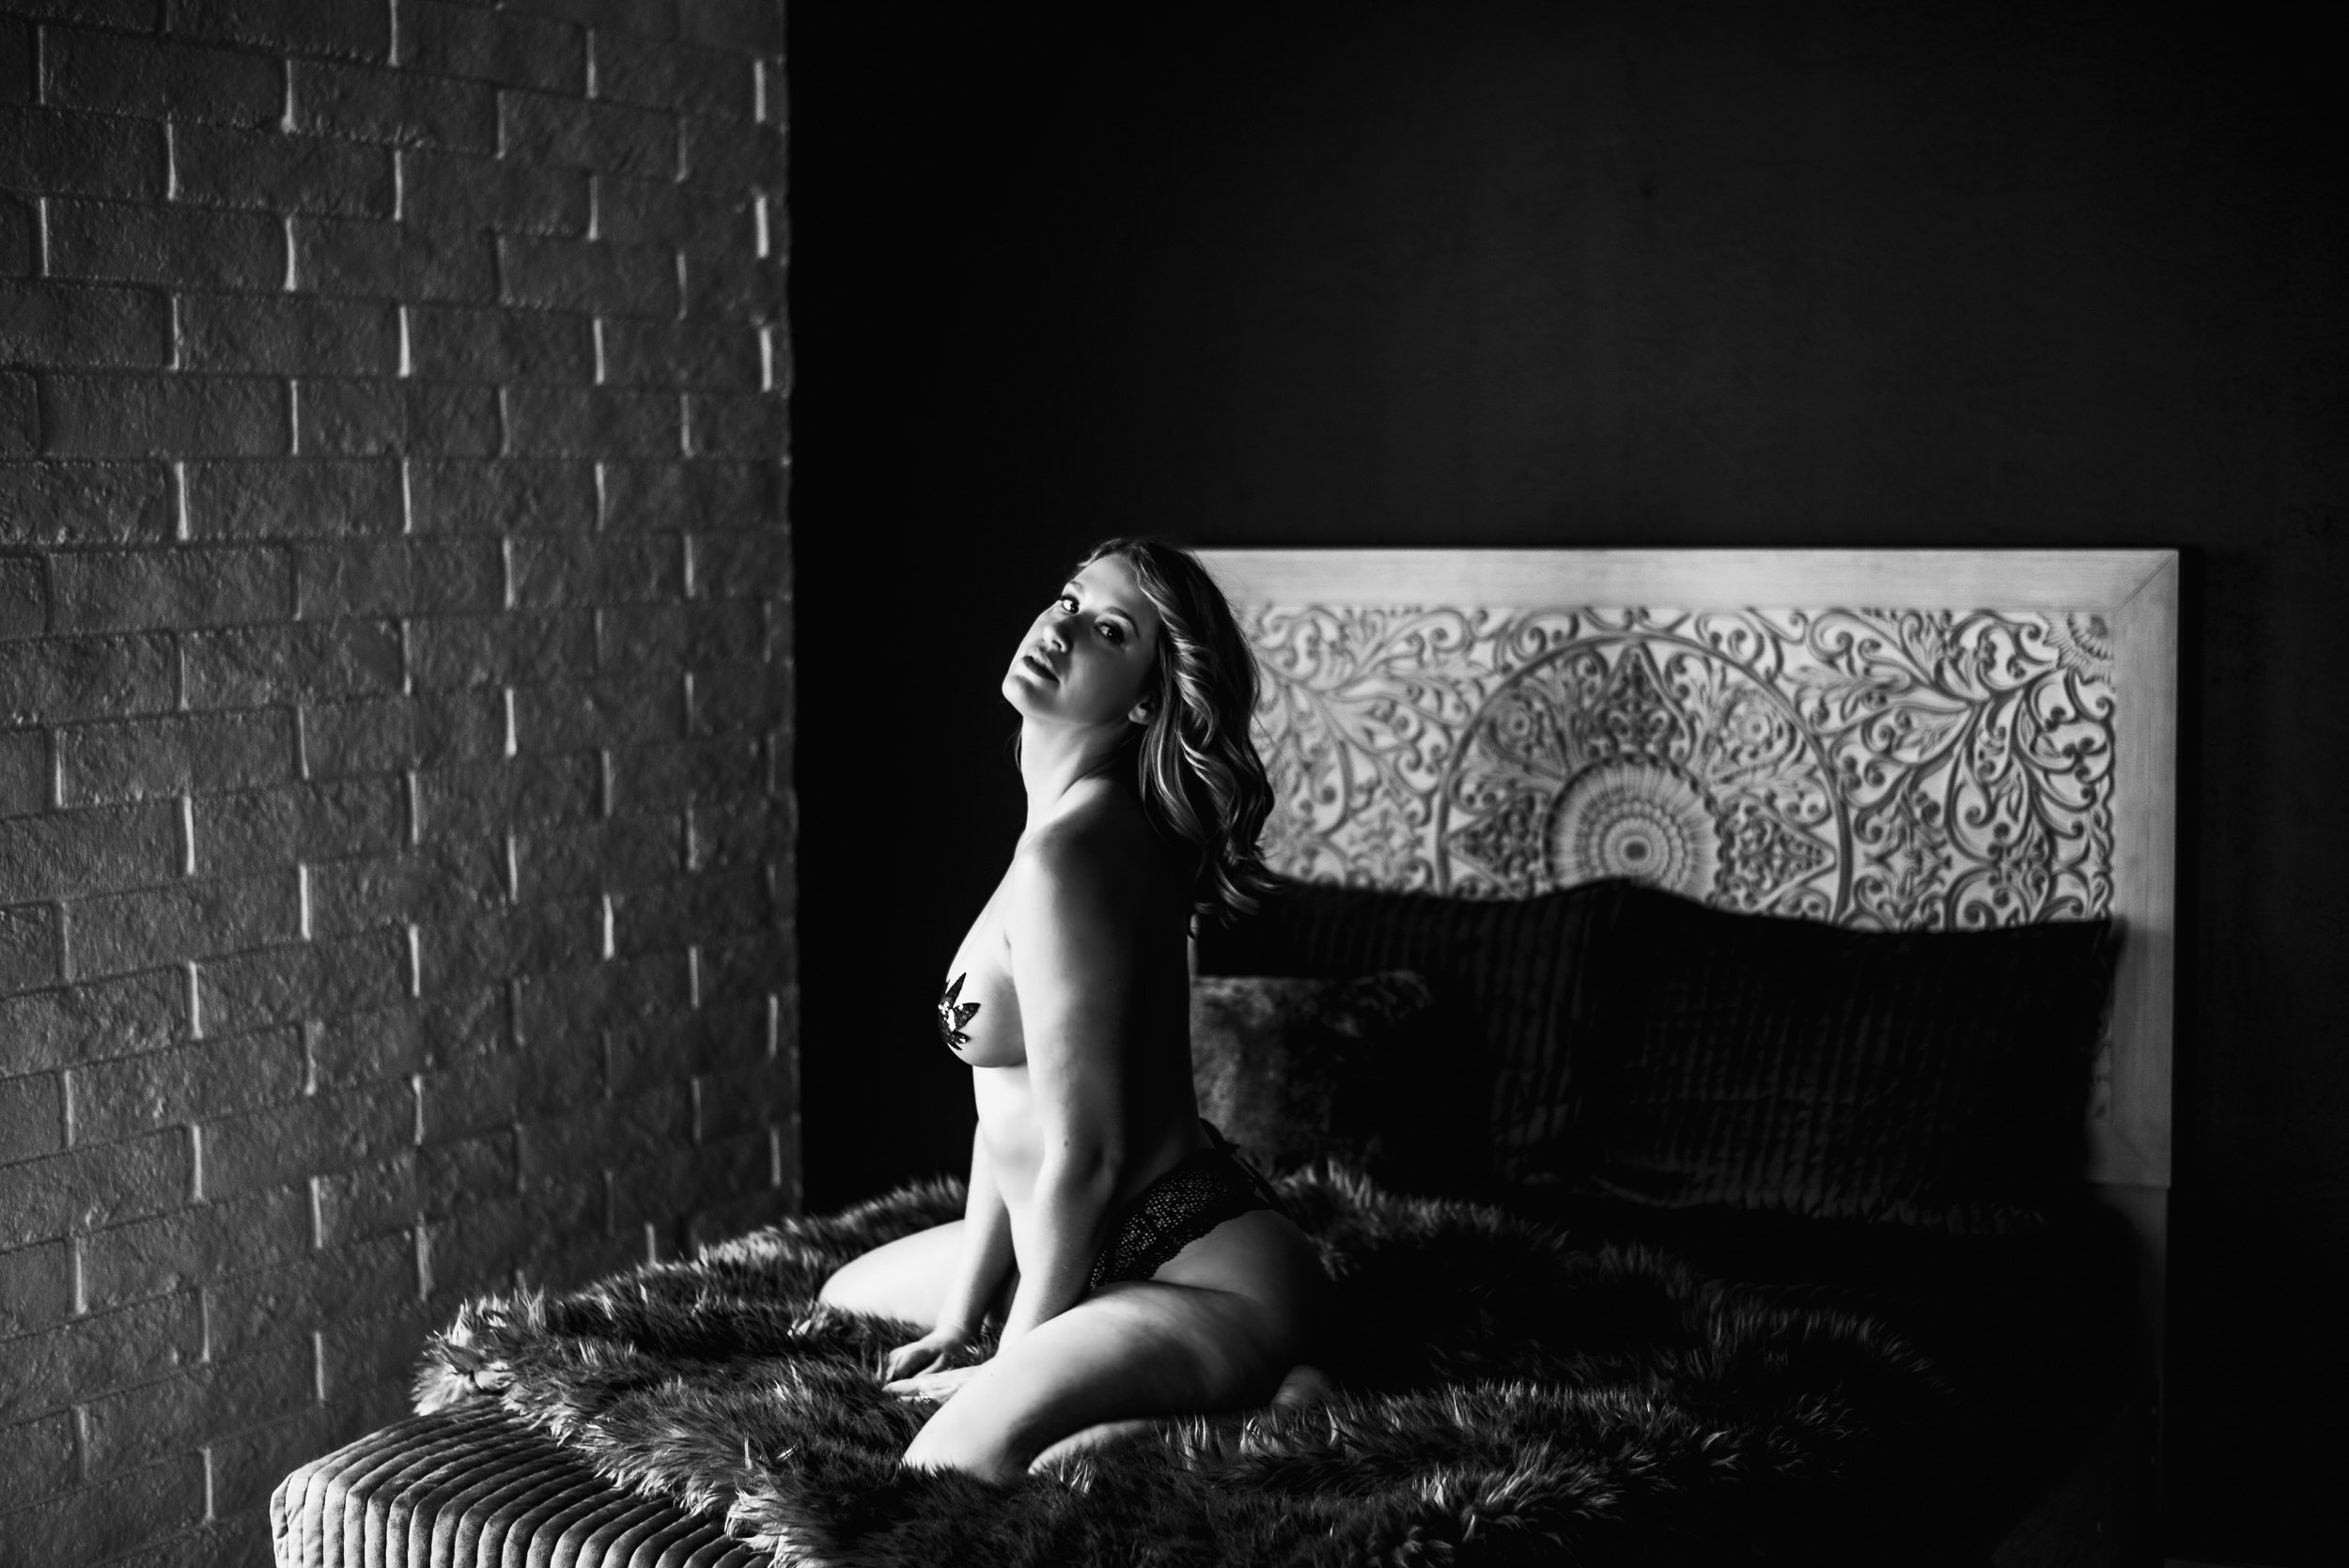 420 boudoir photos in black and white